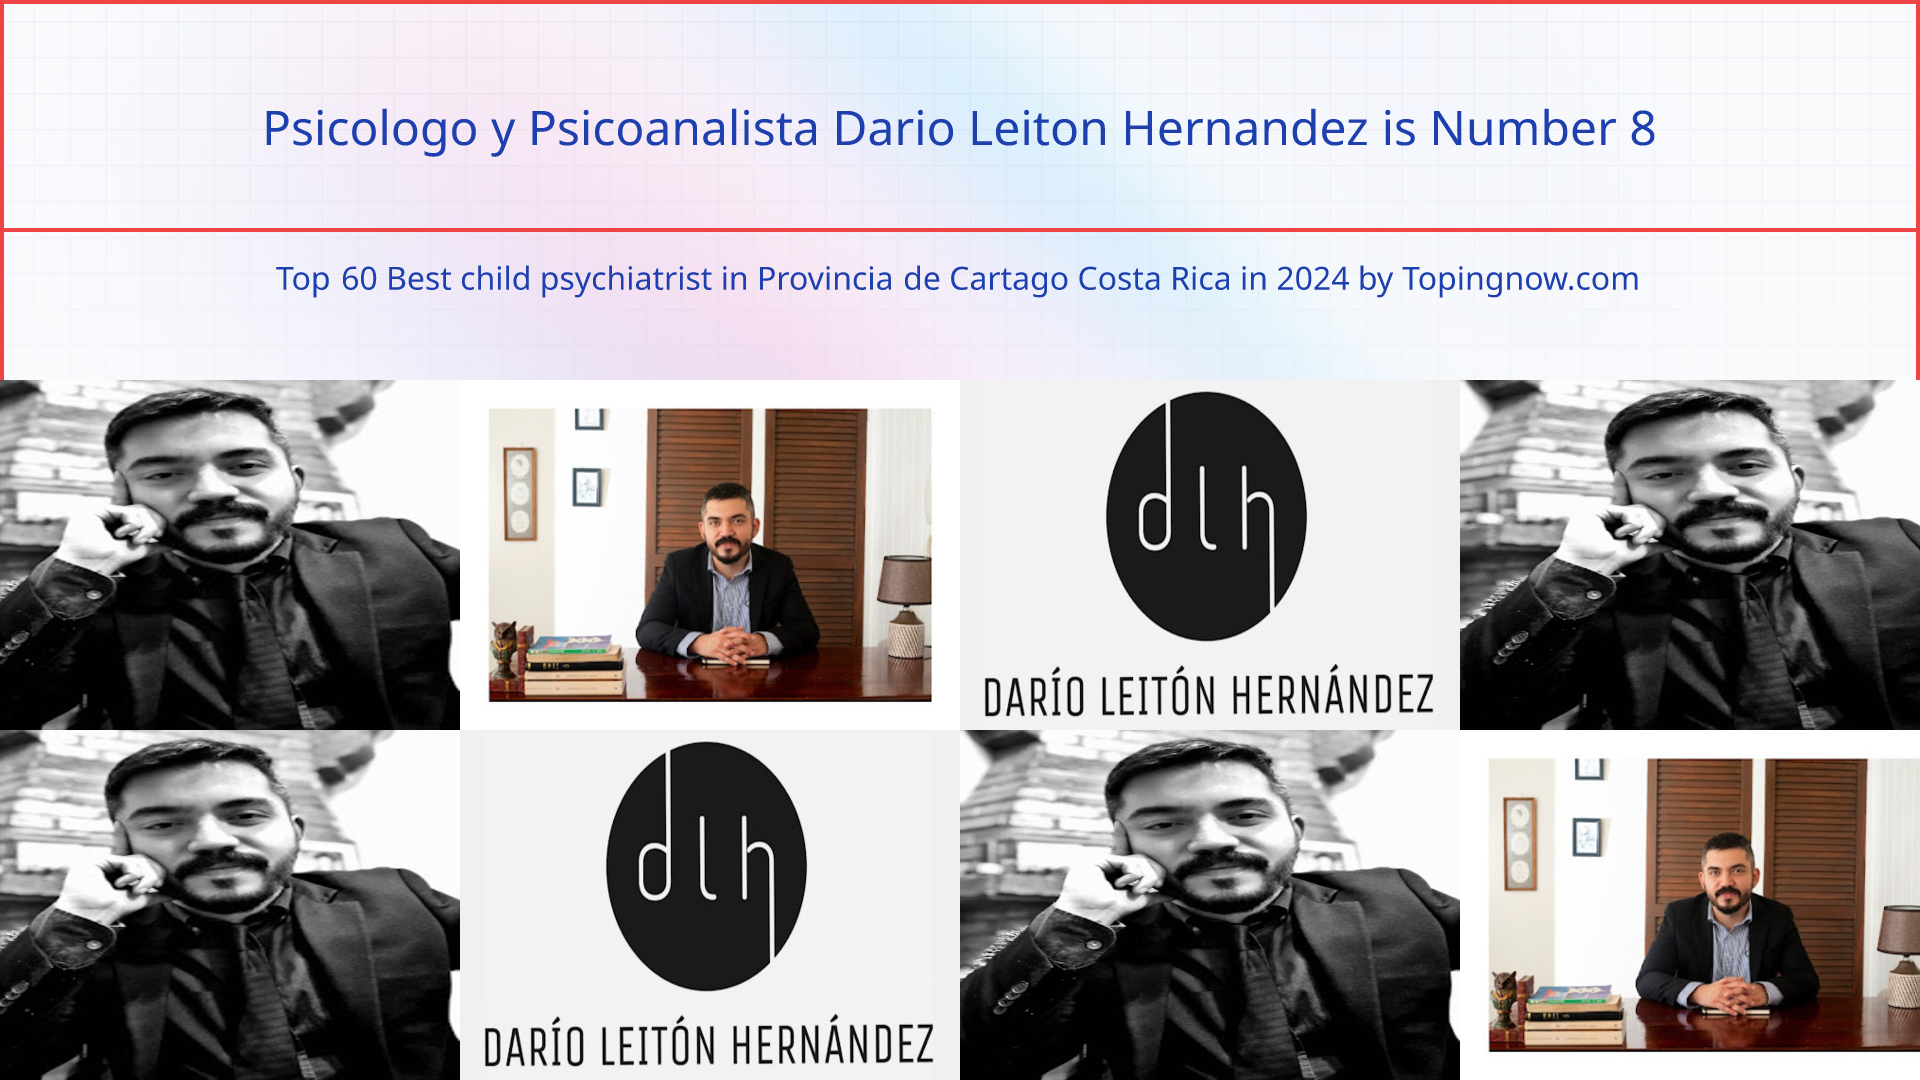 Psicologo y Psicoanalista Dario Leiton Hernandez: Top 60 Best child psychiatrist in Provincia de Cartago Costa Rica in 2024